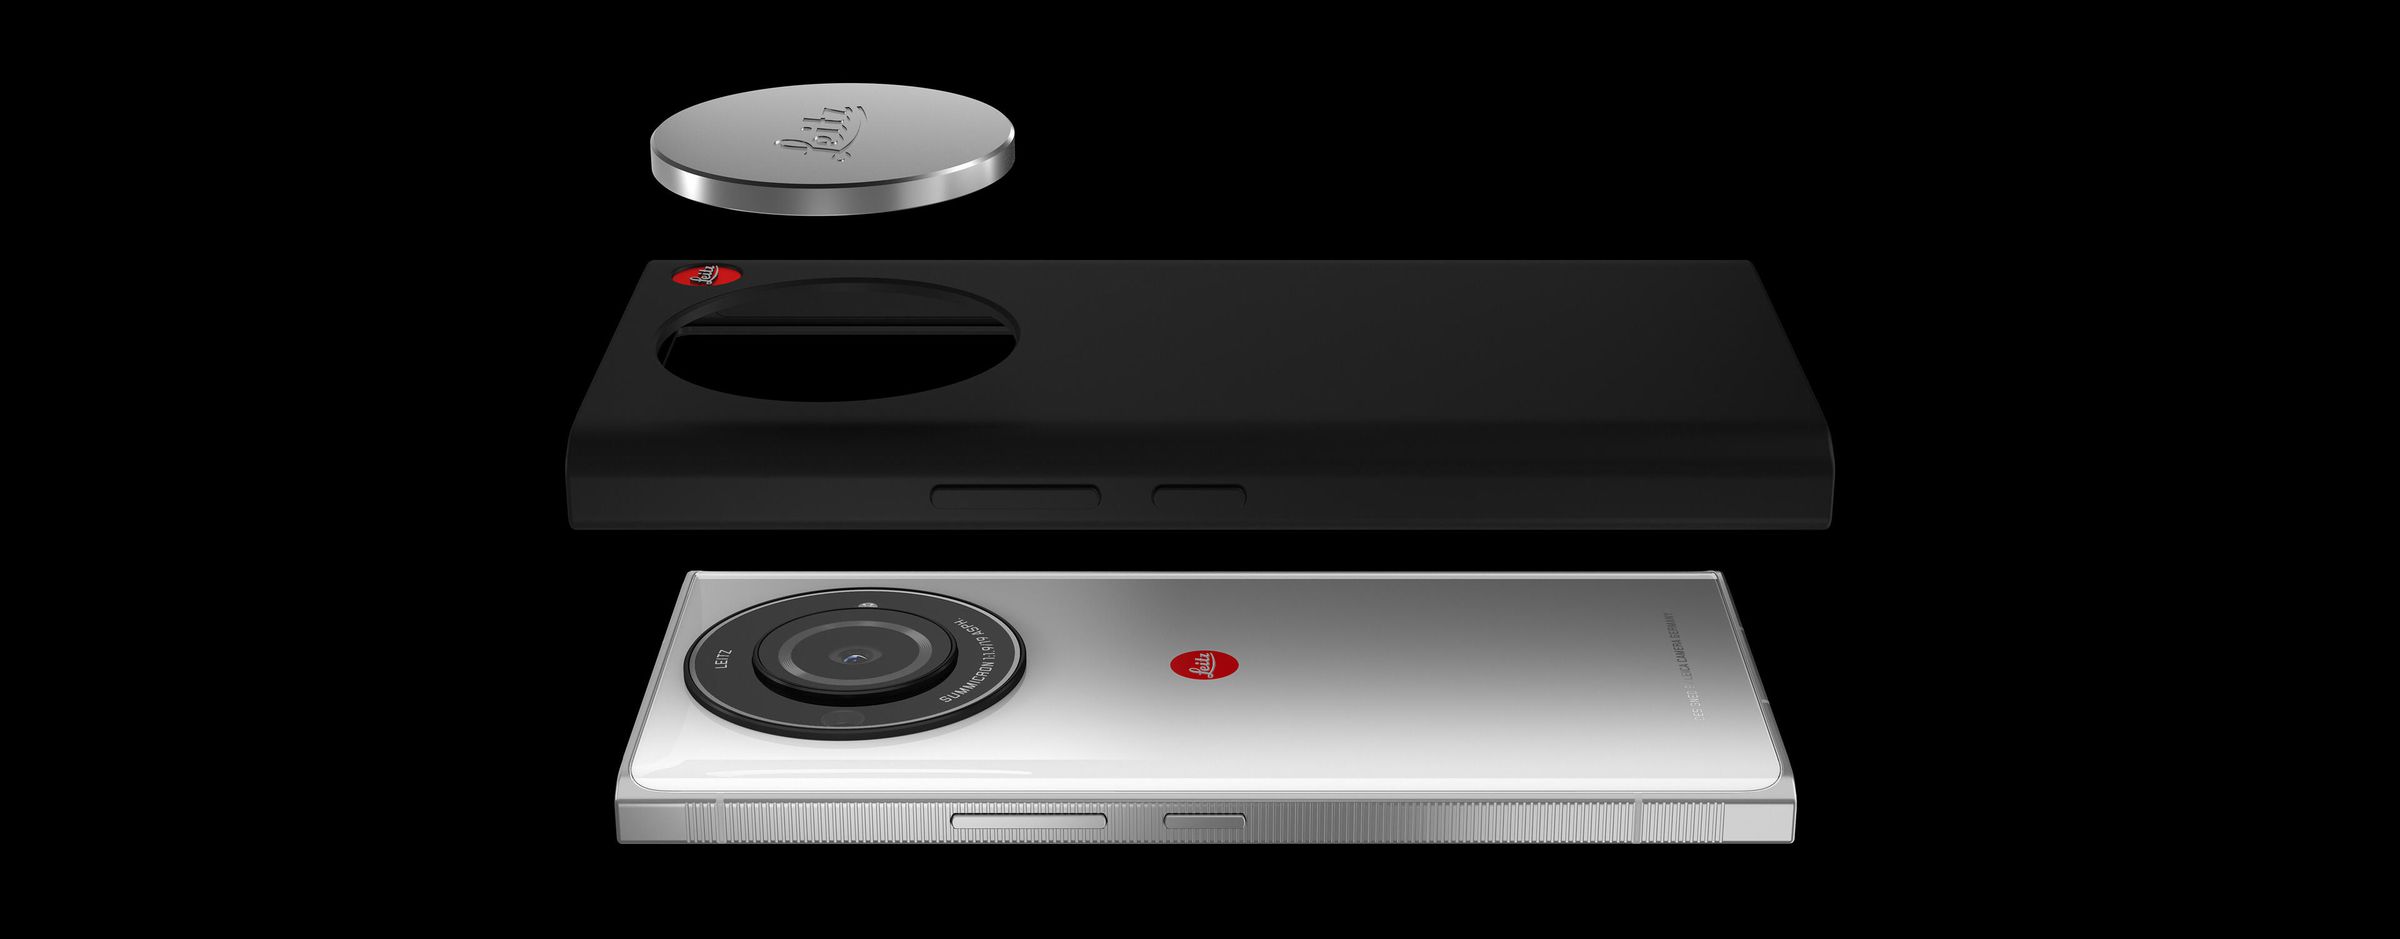 Leica Leitz Phone 2, kılıf ve manyetik lens kapağı ile birlikte resimde.